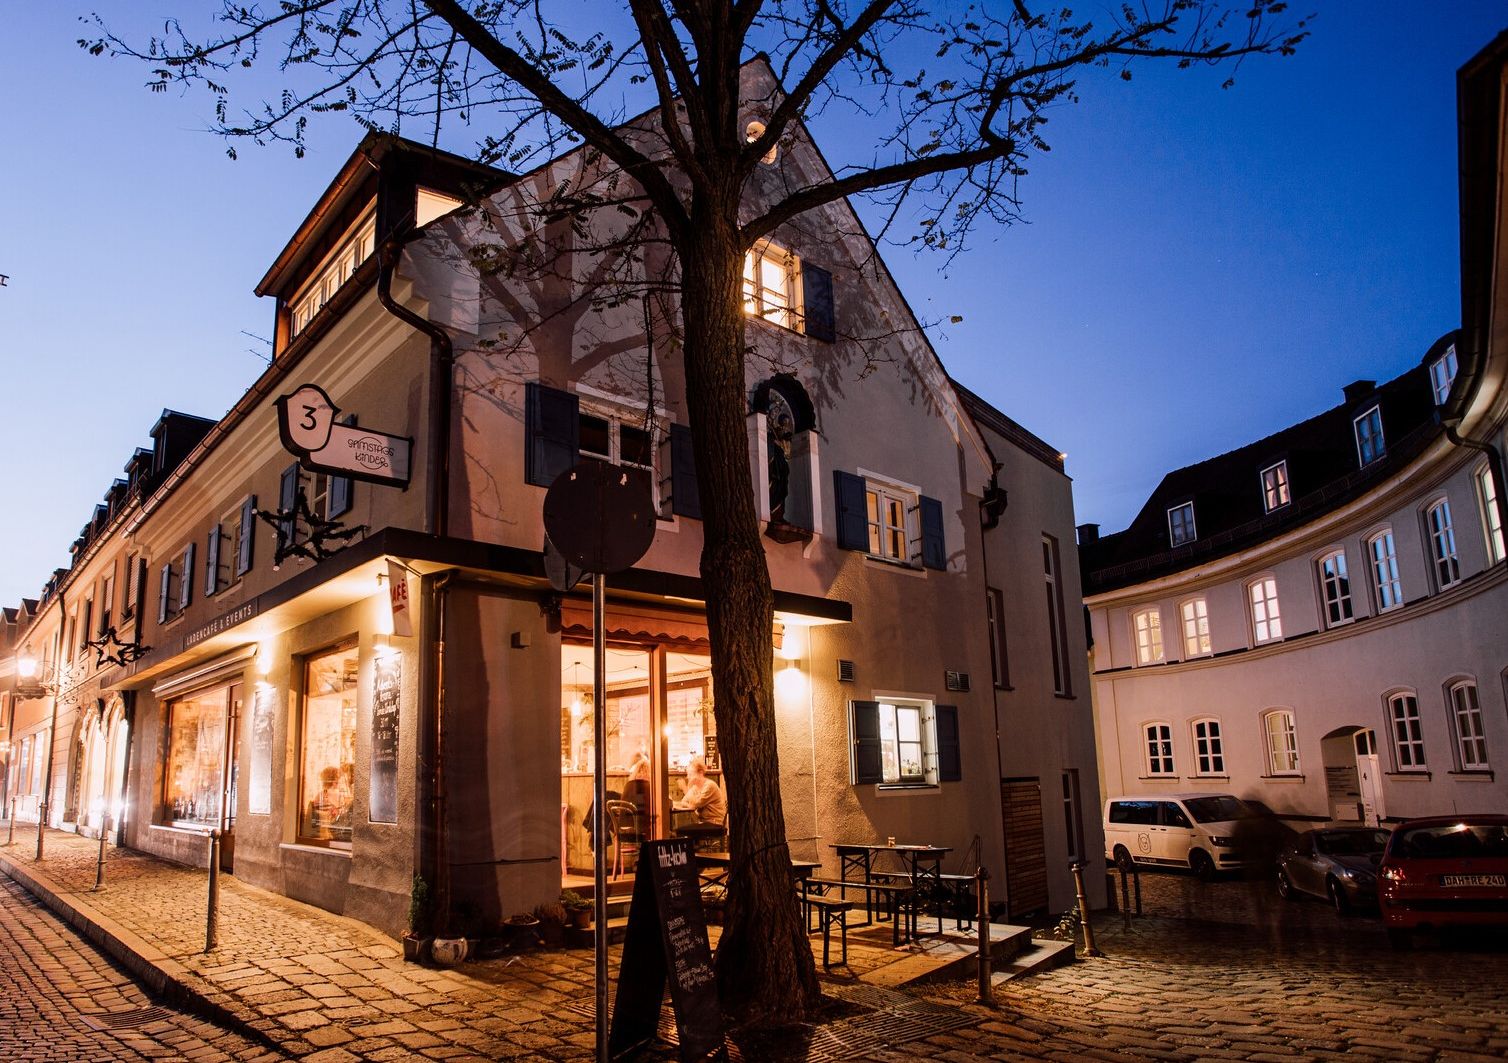 Ein Café in der Dachauer Altstadt, beleuchtet zur blauen Stunde